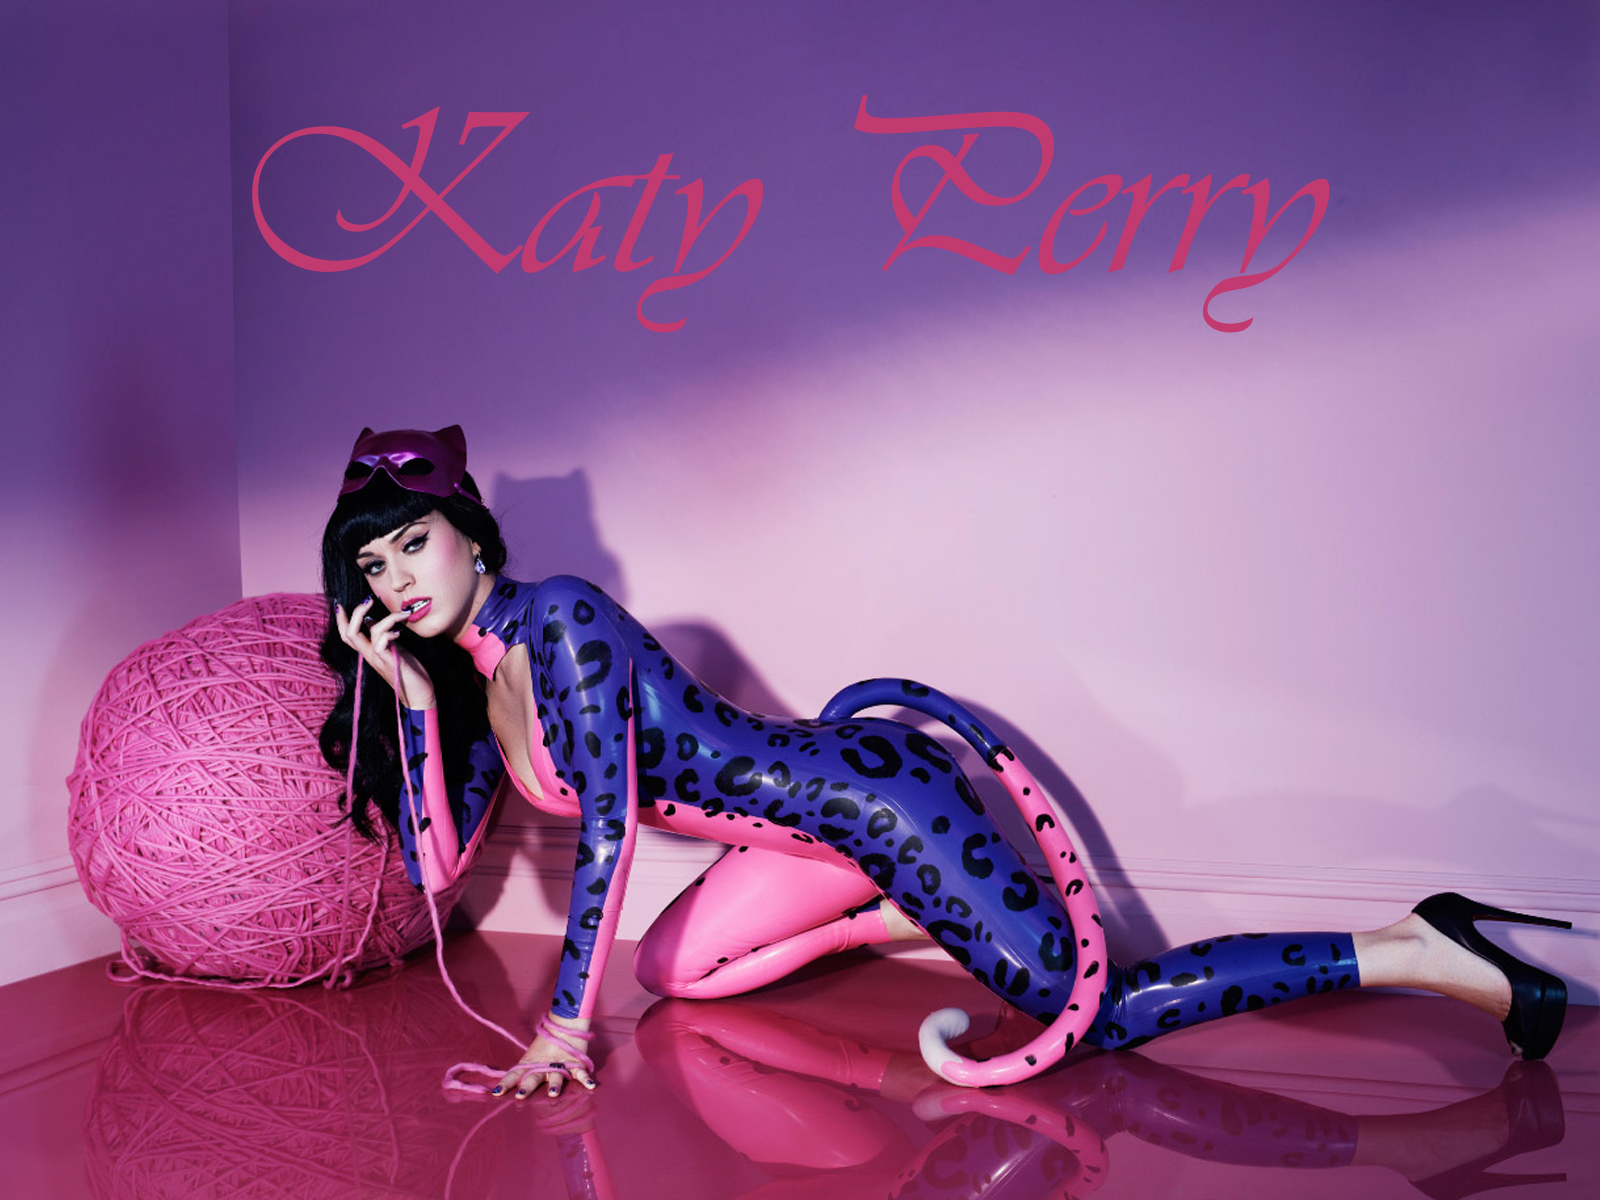 Desktop Hintergrundbilder Katy Perry Musik junge Frauen Prominente 1600x1200 Mädchens junge frau